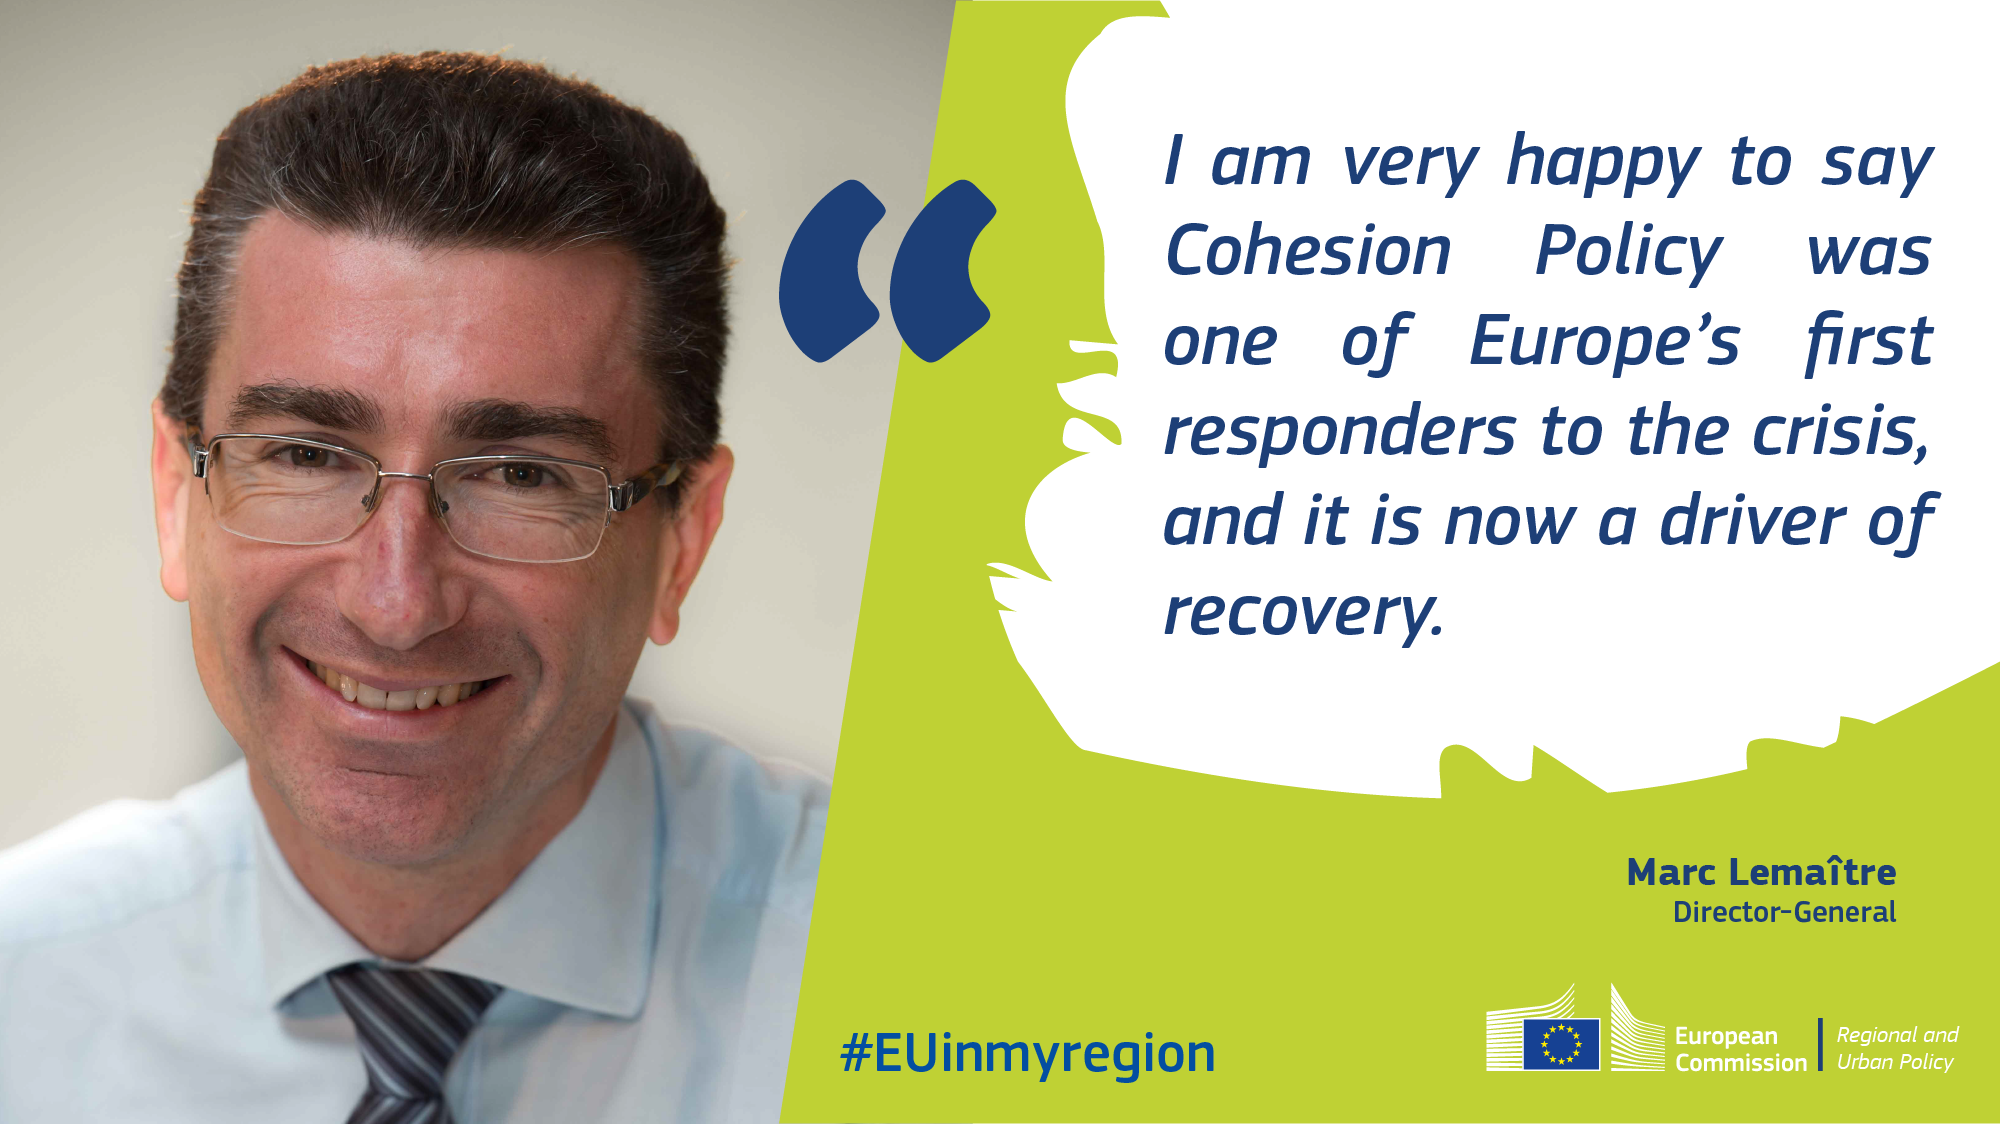 «Sono lieto di affermare che la politica di coesione è stata una delle prime risposte dell’Europa alla crisi e adesso costituisce uno stimolo alla ripresa»